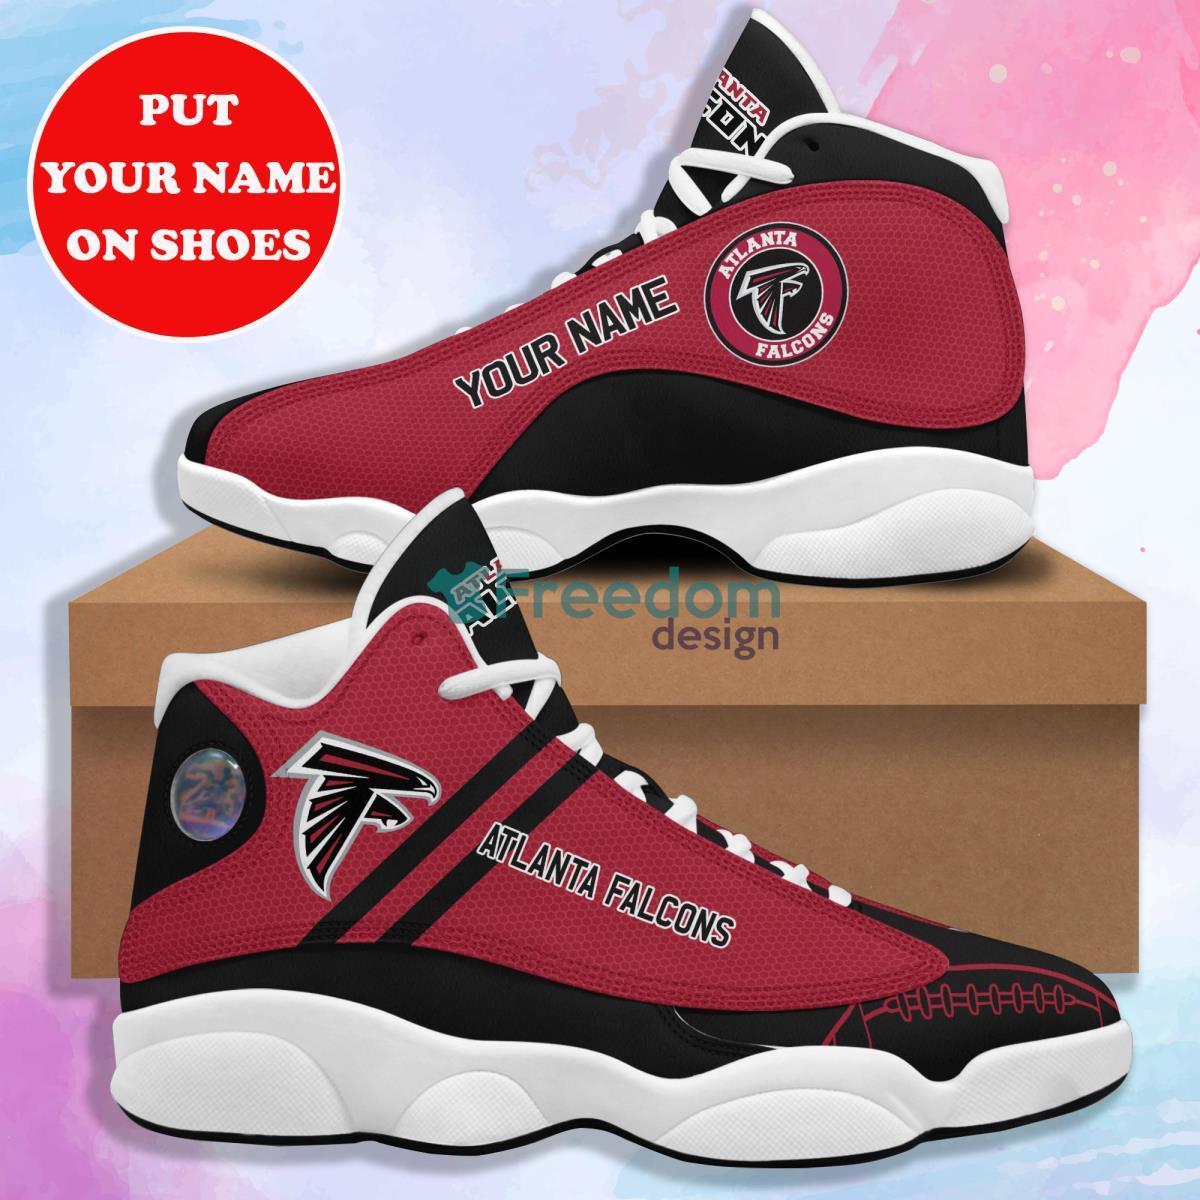 Alanta Falcons Football Team Style Custom Name Air Jordan 13 Sneaker Product Photo 1